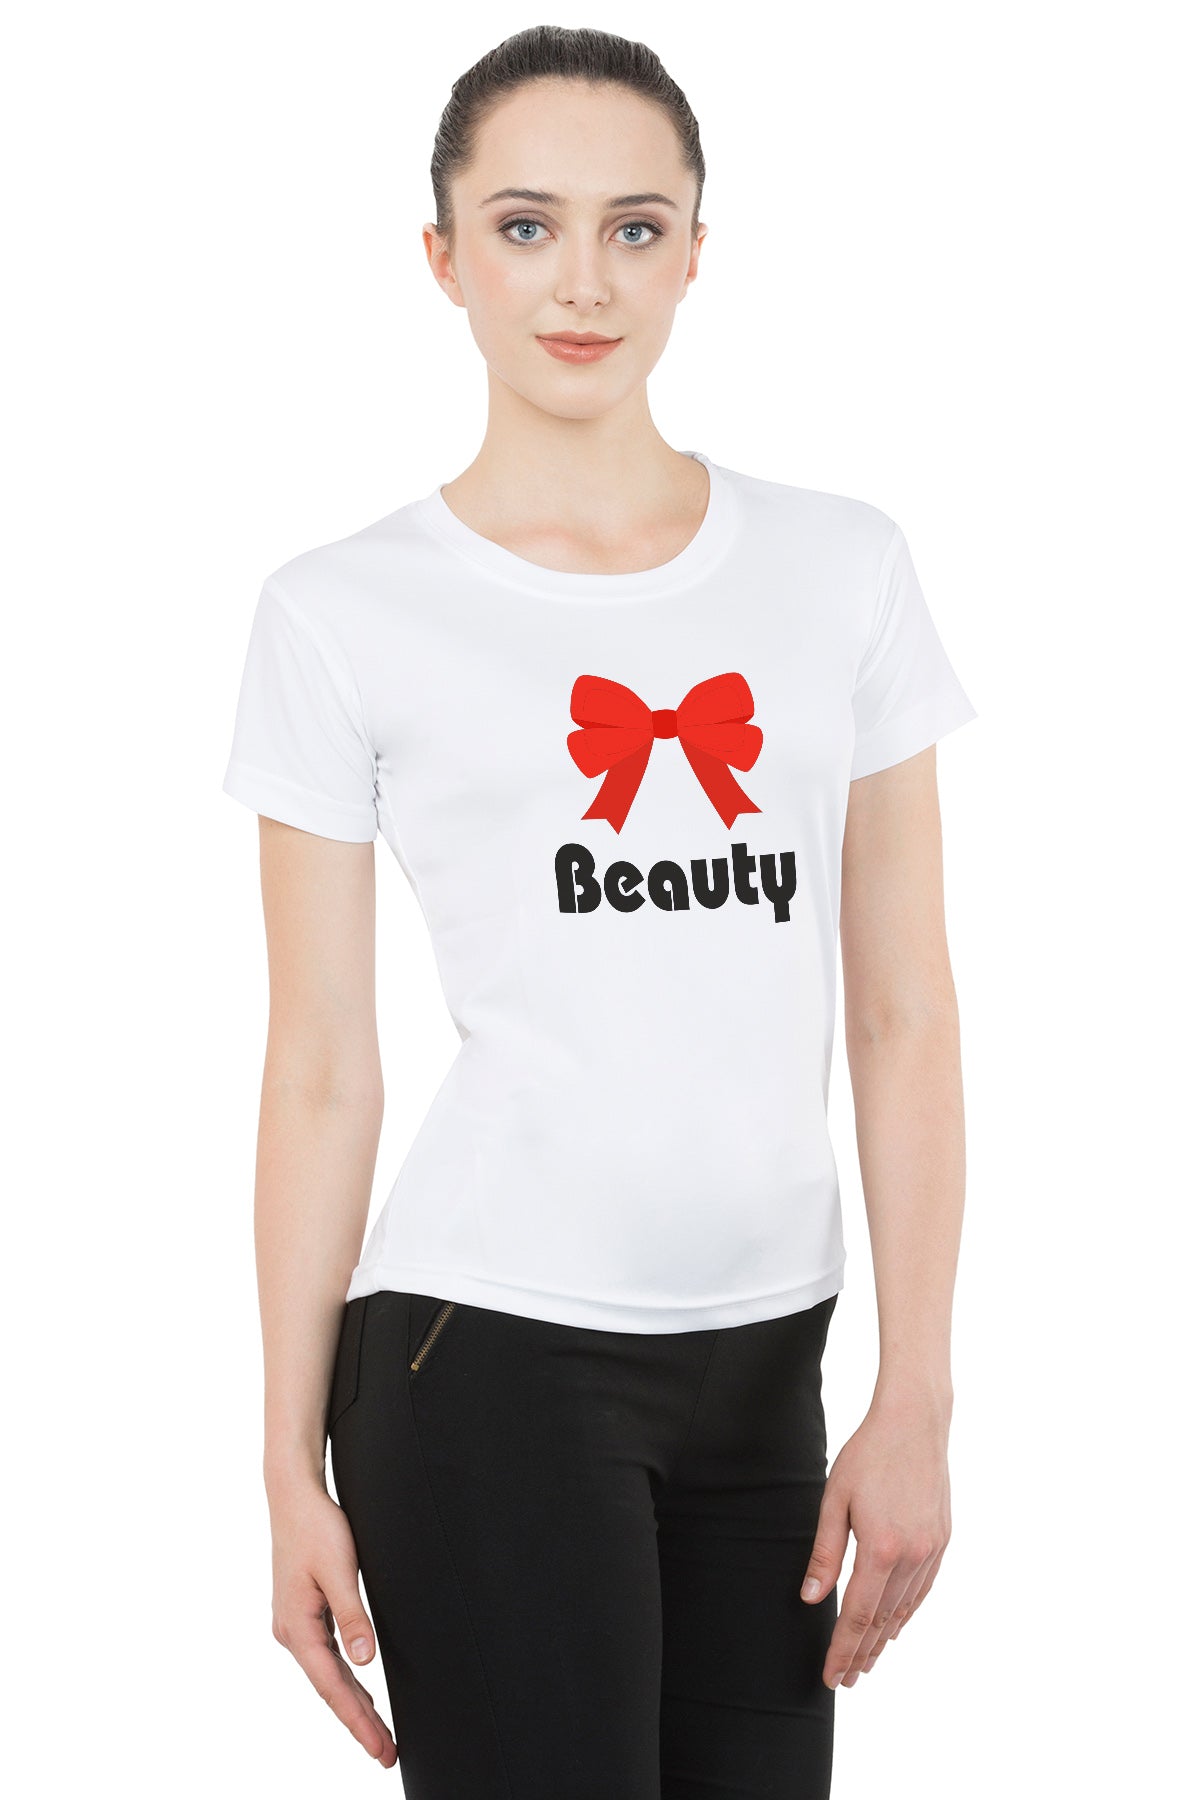 Beauty Beast matching Couple T shirts- White